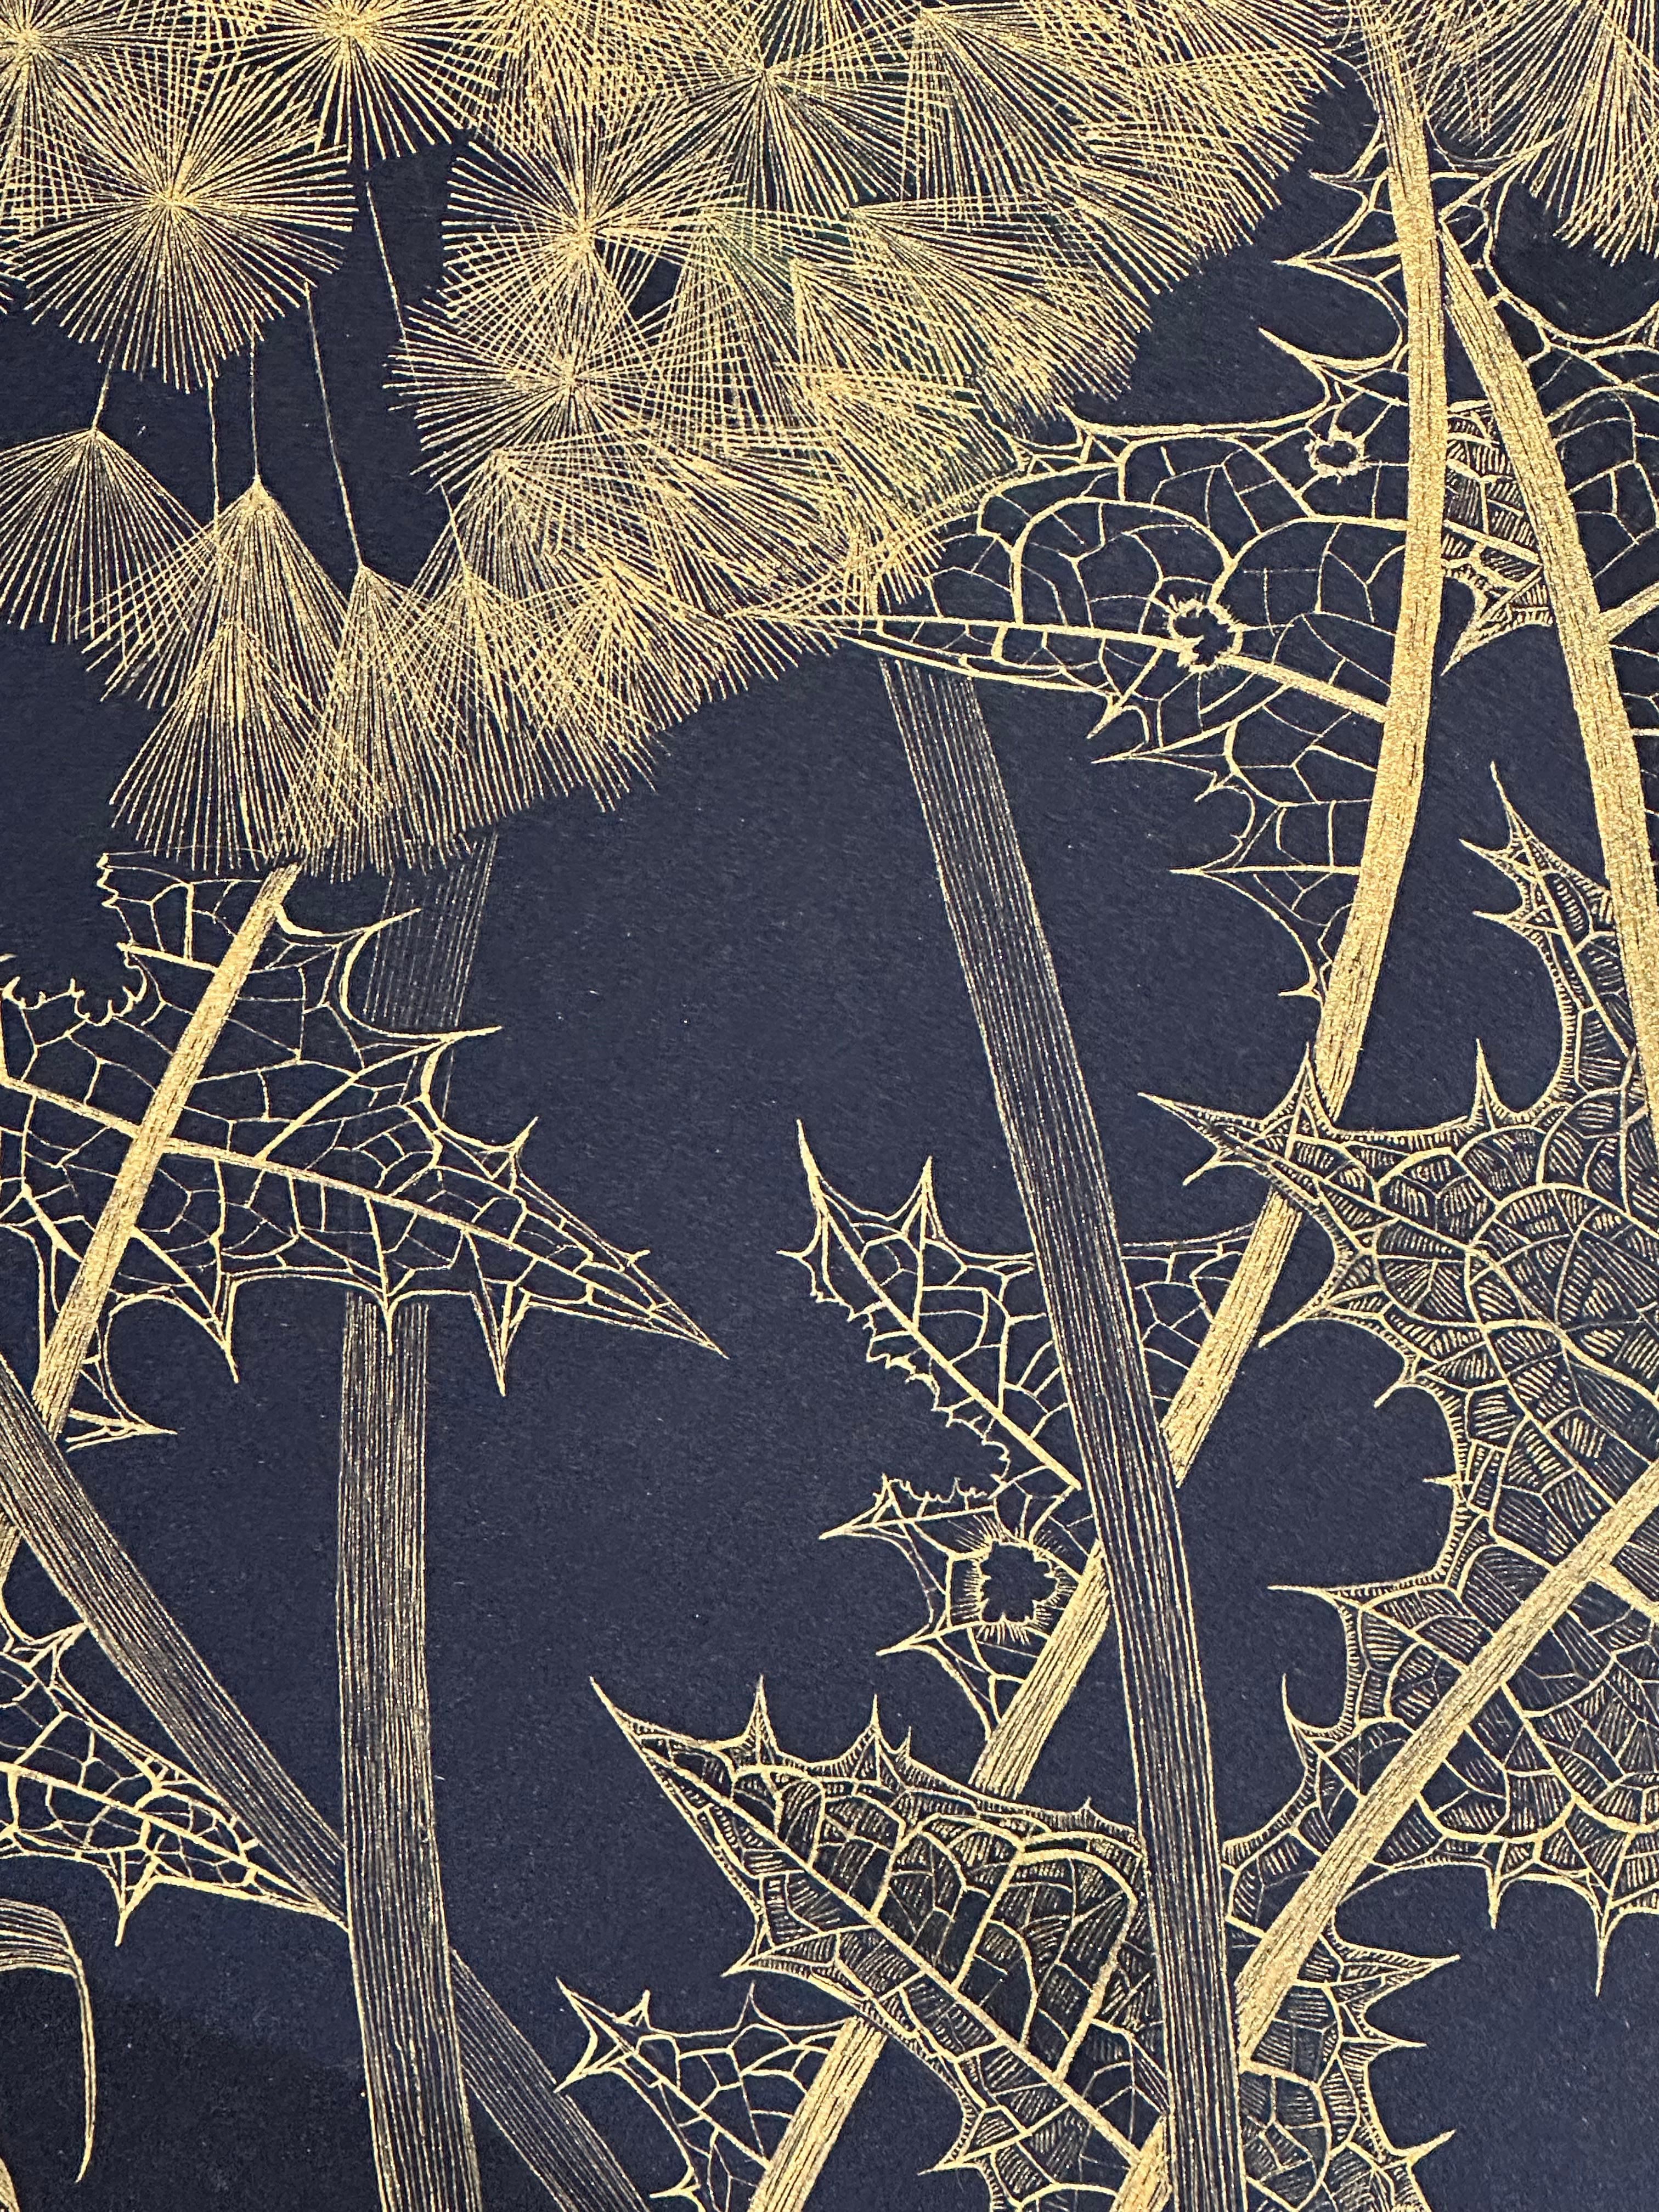 Große Löwenzahn Sechs, Botanische Malerei Schwarz, Gold Blumen, Blätter, Stem 1